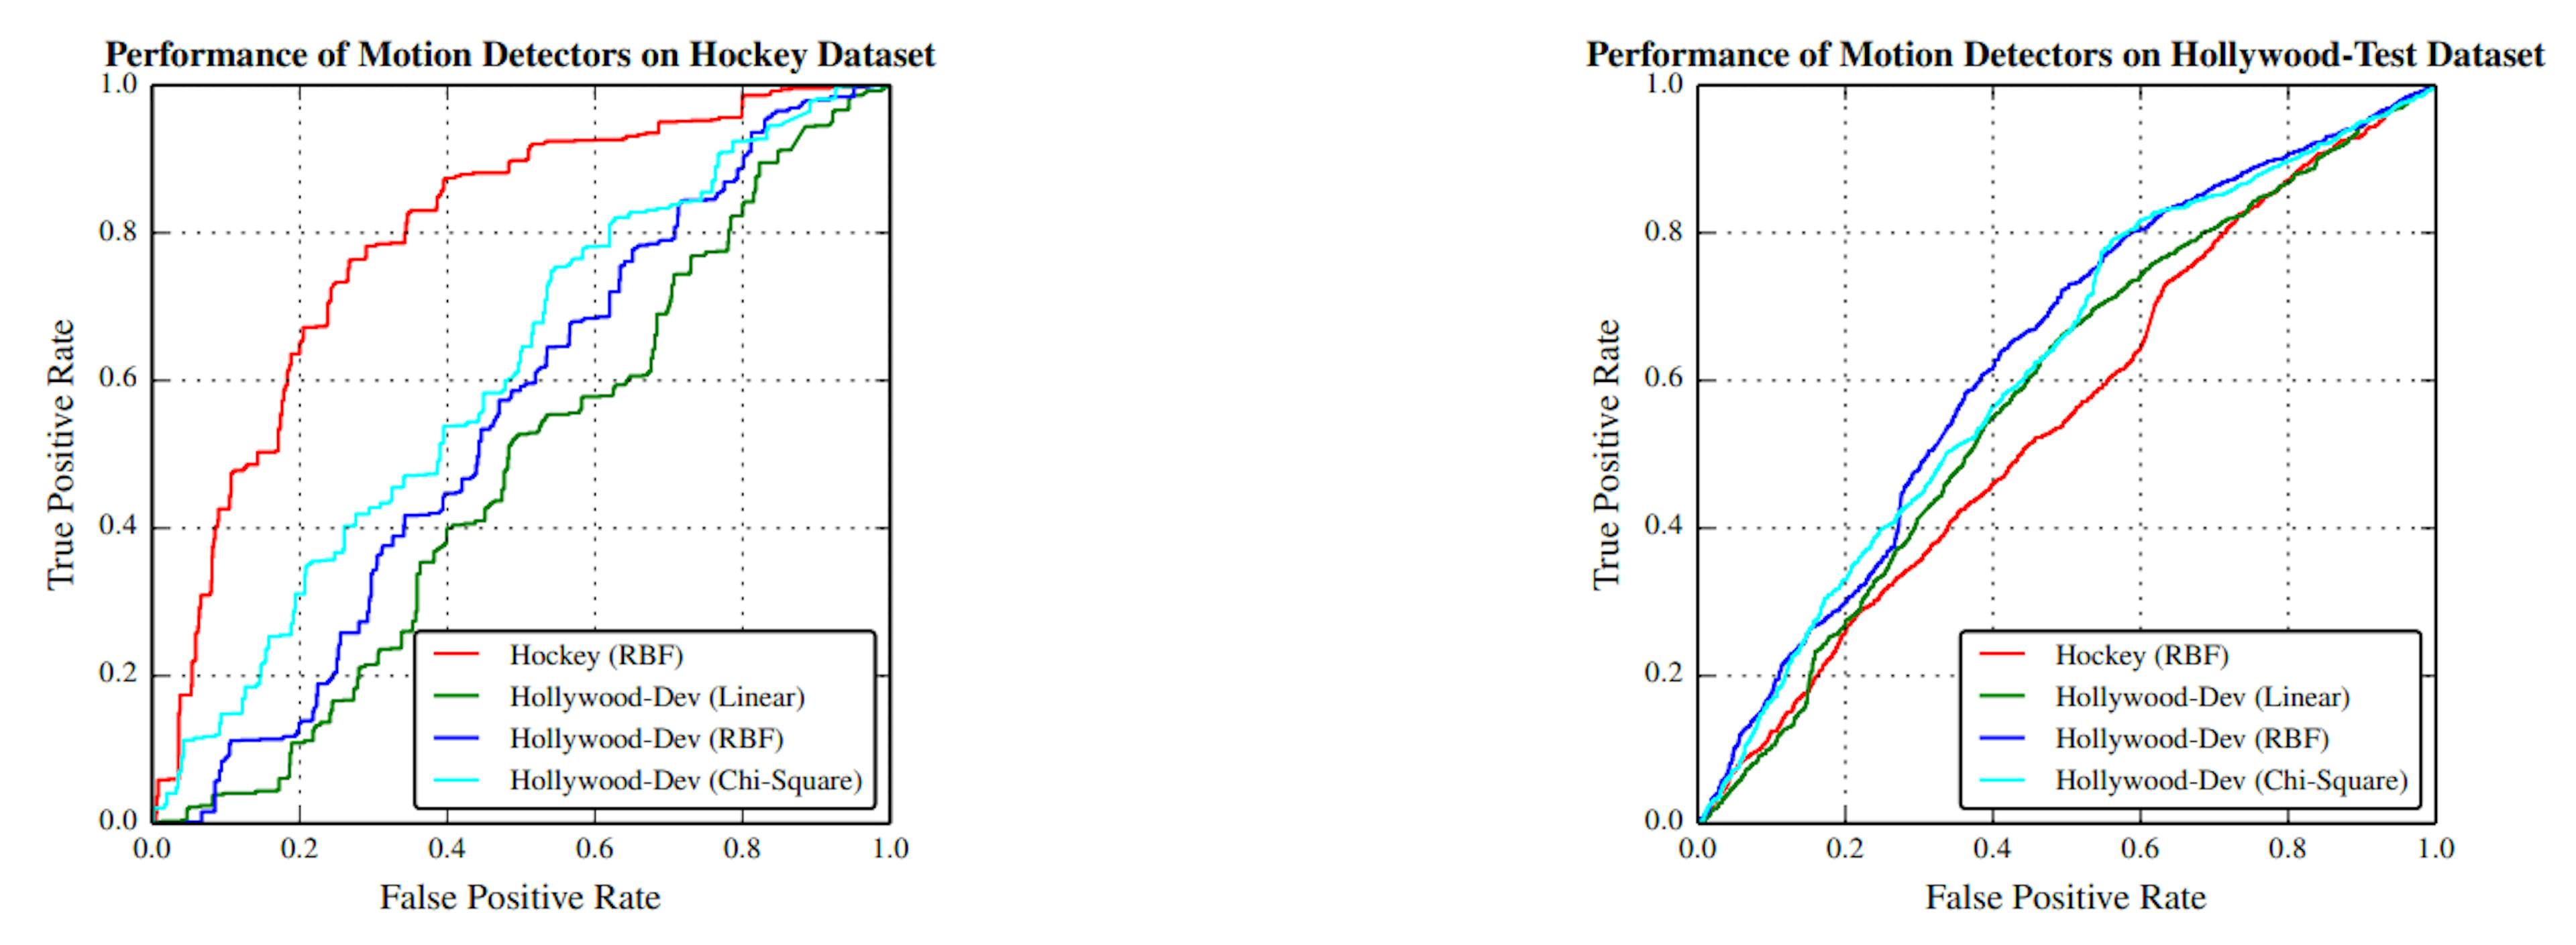 Abbildung 4.5: Leistung der Bewegungsmerkmalklassifizierer auf Hockey- und HollywoodTest-Datensätzen. Die rote Kurve ist für den Klassifizierer, der auf dem Hockey-Datensatz trainiert wurde, und die restlichen drei sind für die drei Klassifizierer, die auf dem Hollywood-Dev-Datensatz mit linearen, RBF- und Chi-Quadrat-Kerneln trainiert wurden.